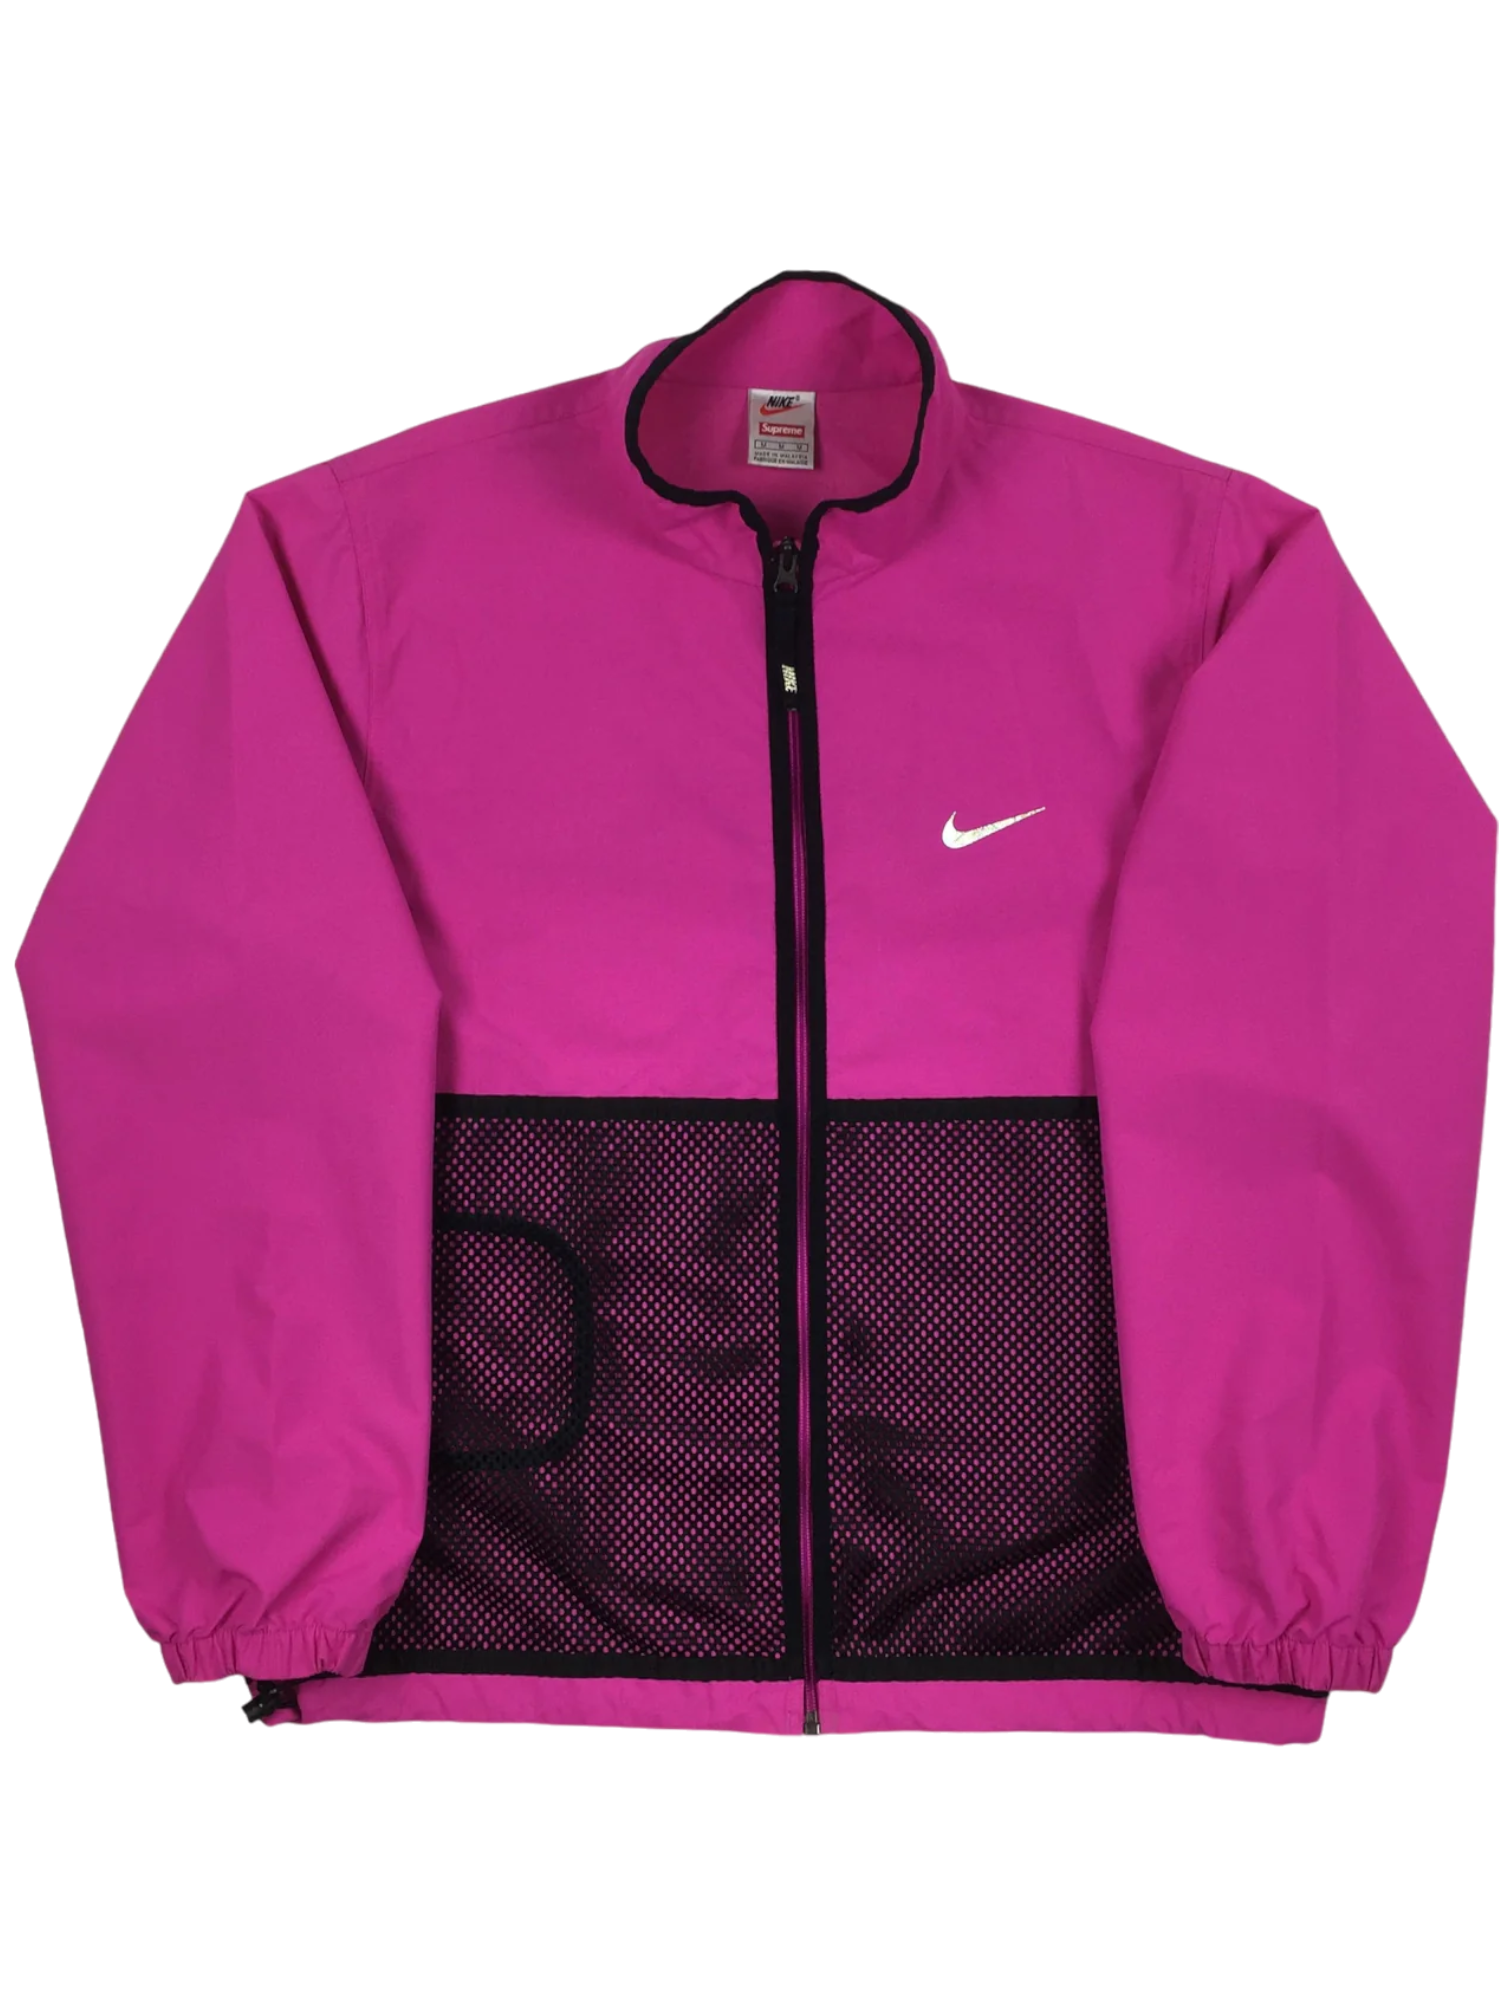 2017 Supreme x NIKE Pink 3M Trail Running Jacket